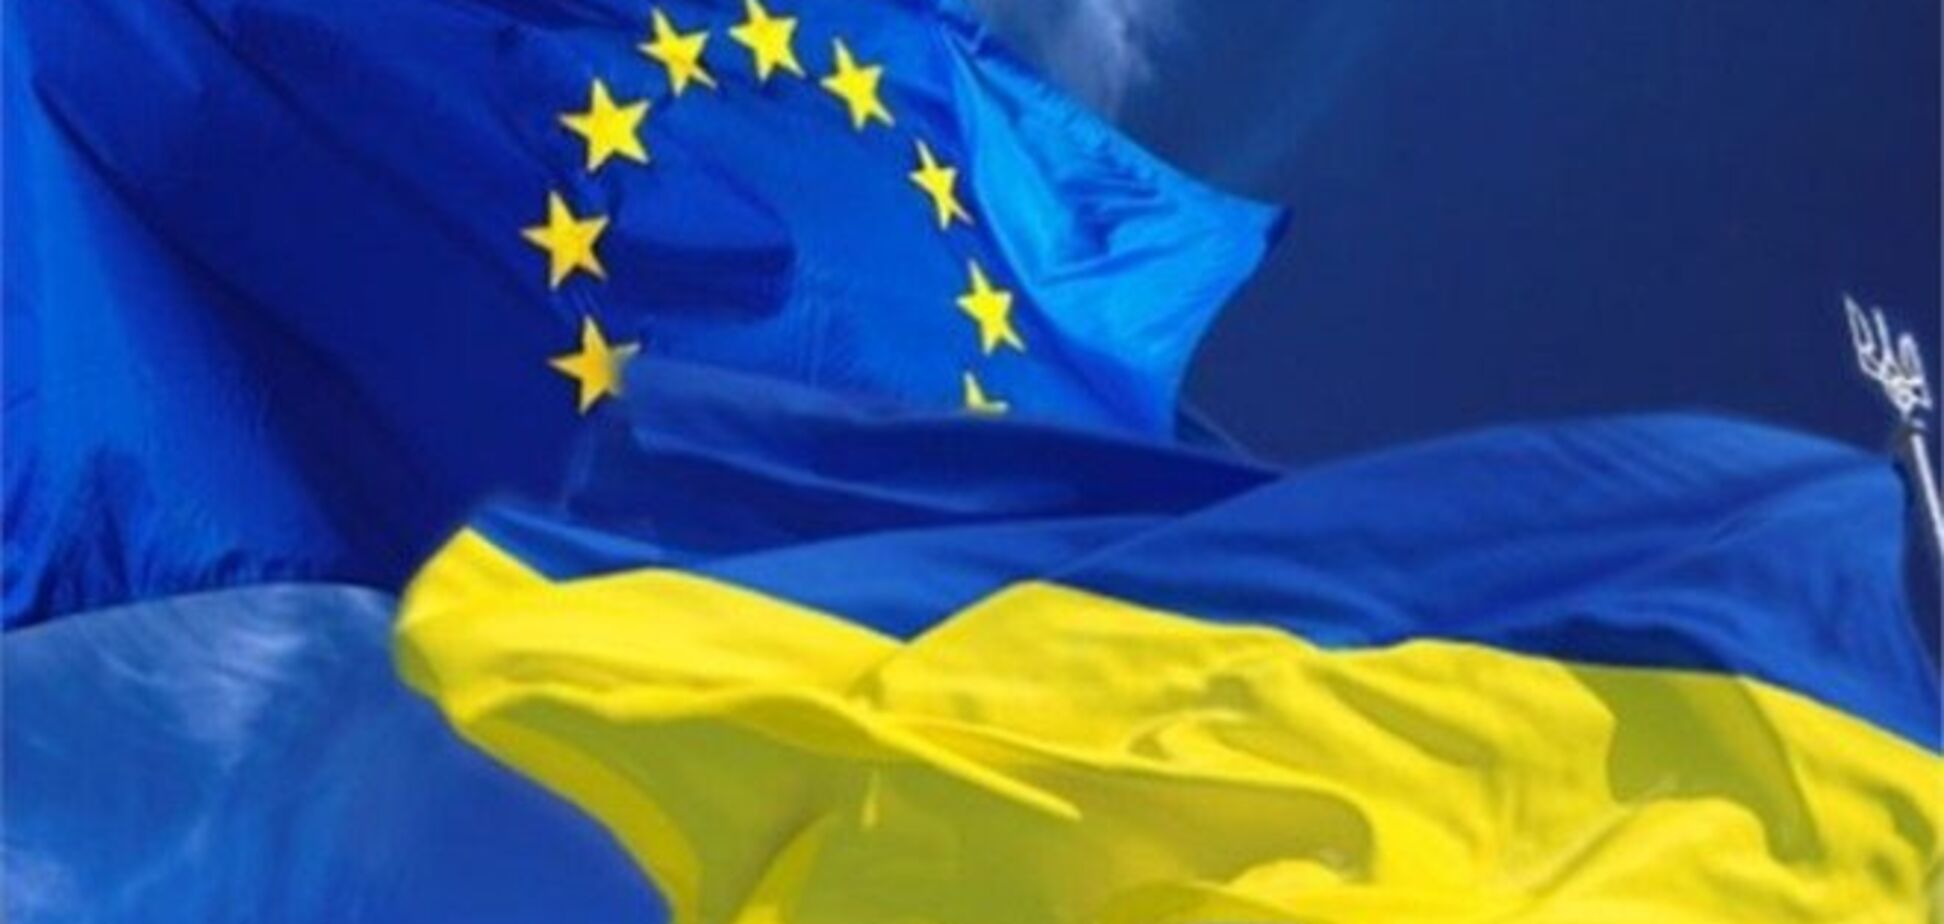 Угода про асоціацію треба підписати до Вільнюського саміту - євродепутат